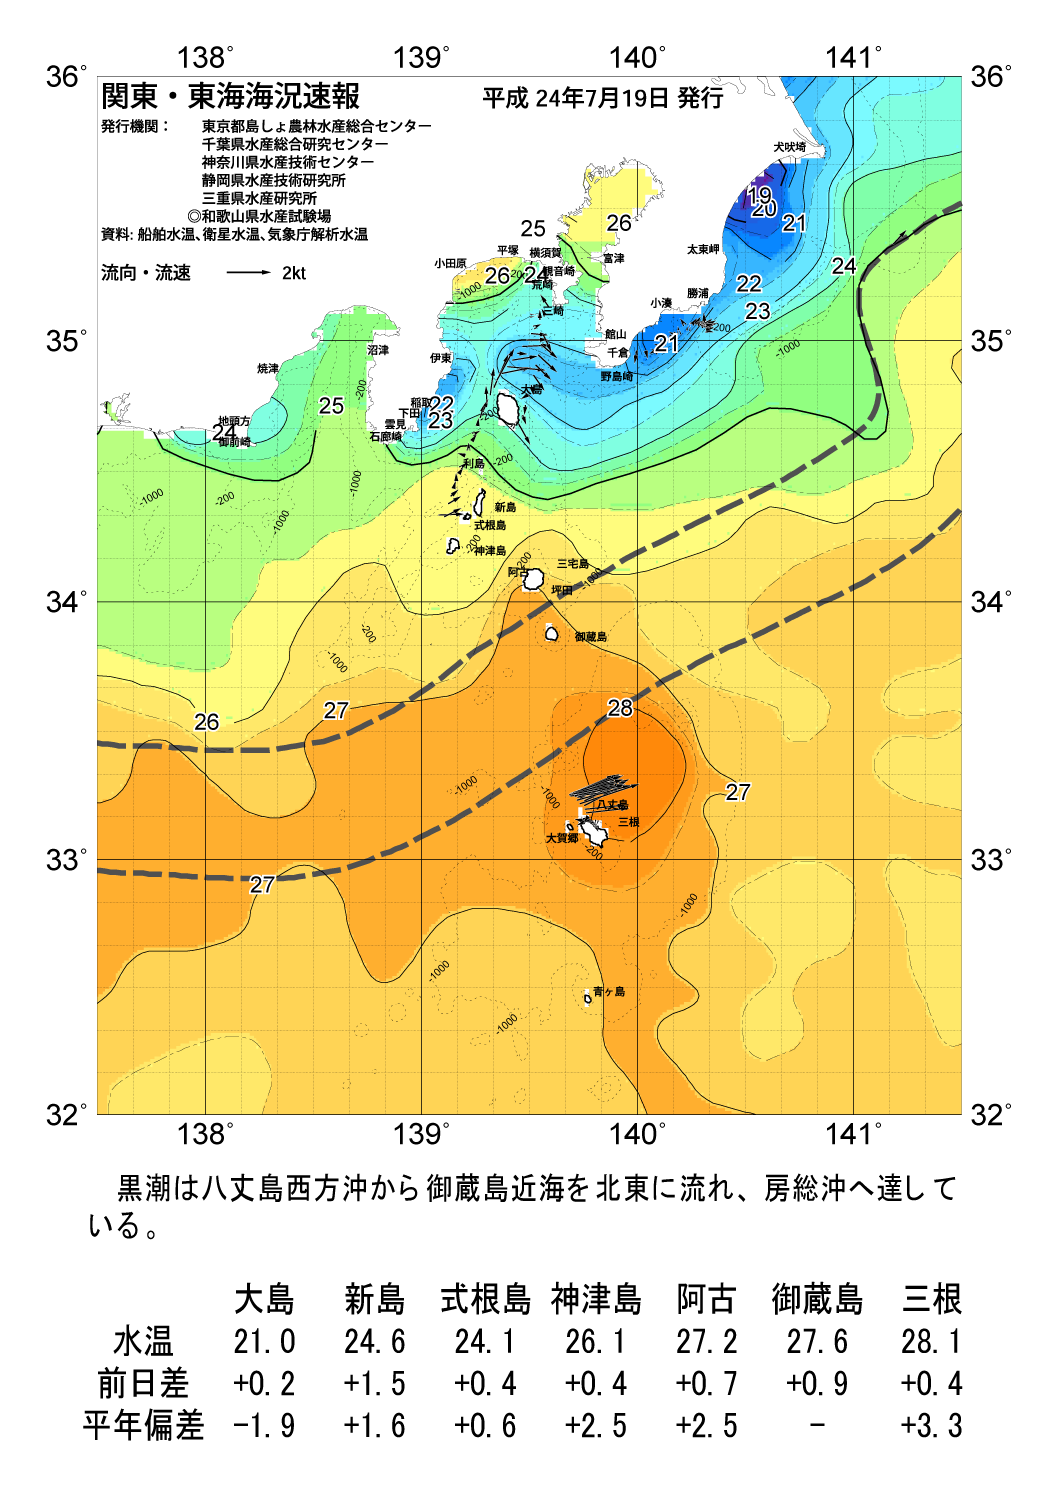 海の天気図12年7月19日 東京都島しょ農林水産総合センター